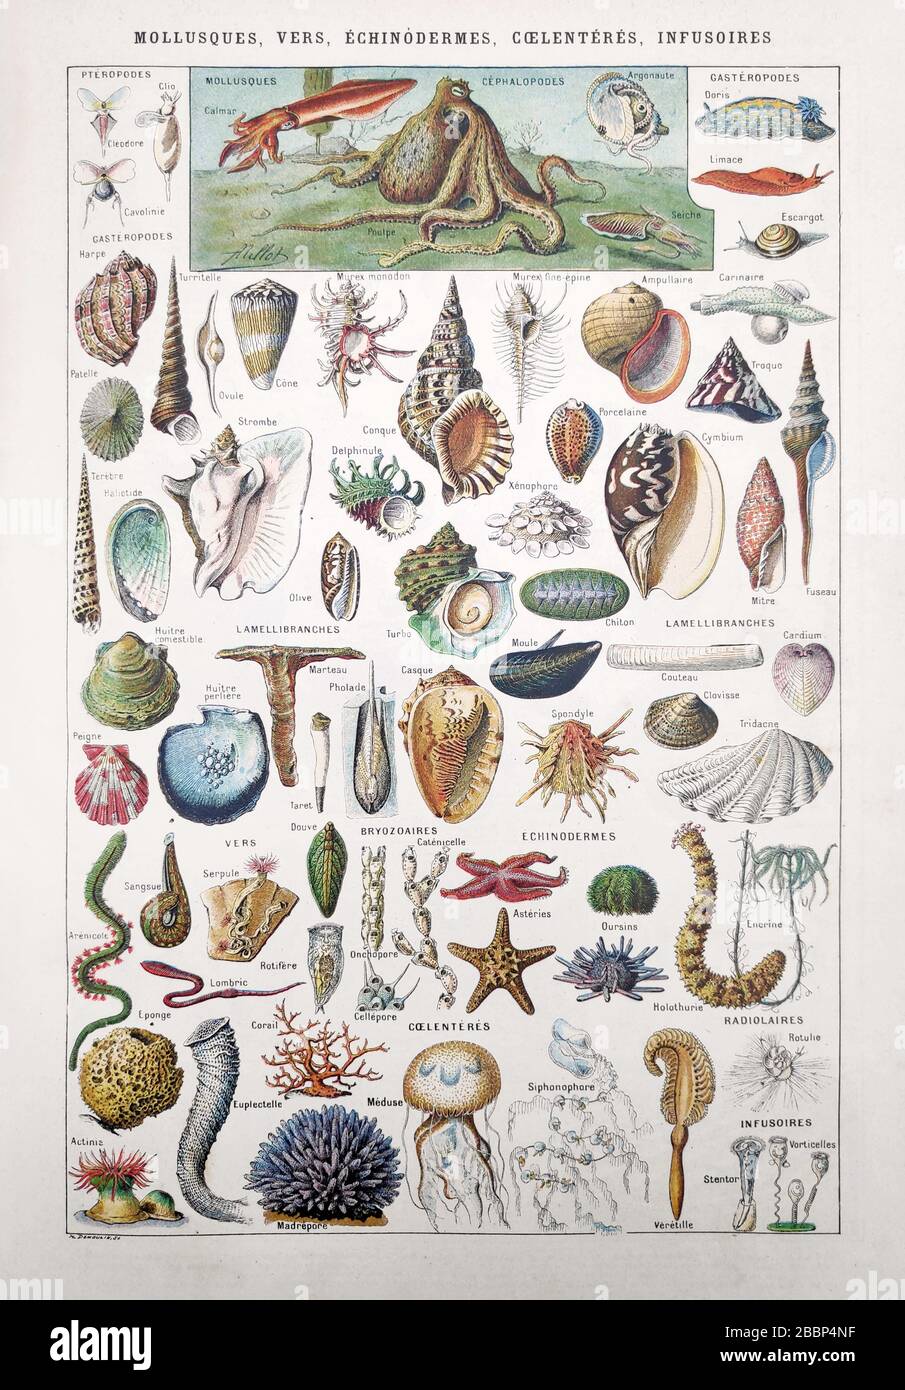 Antigua ilustración sobre la vida marina (moluscos, gusanos, equinodermos, coelenterados e infusoria) de Millot y Demoulin. Foto de stock